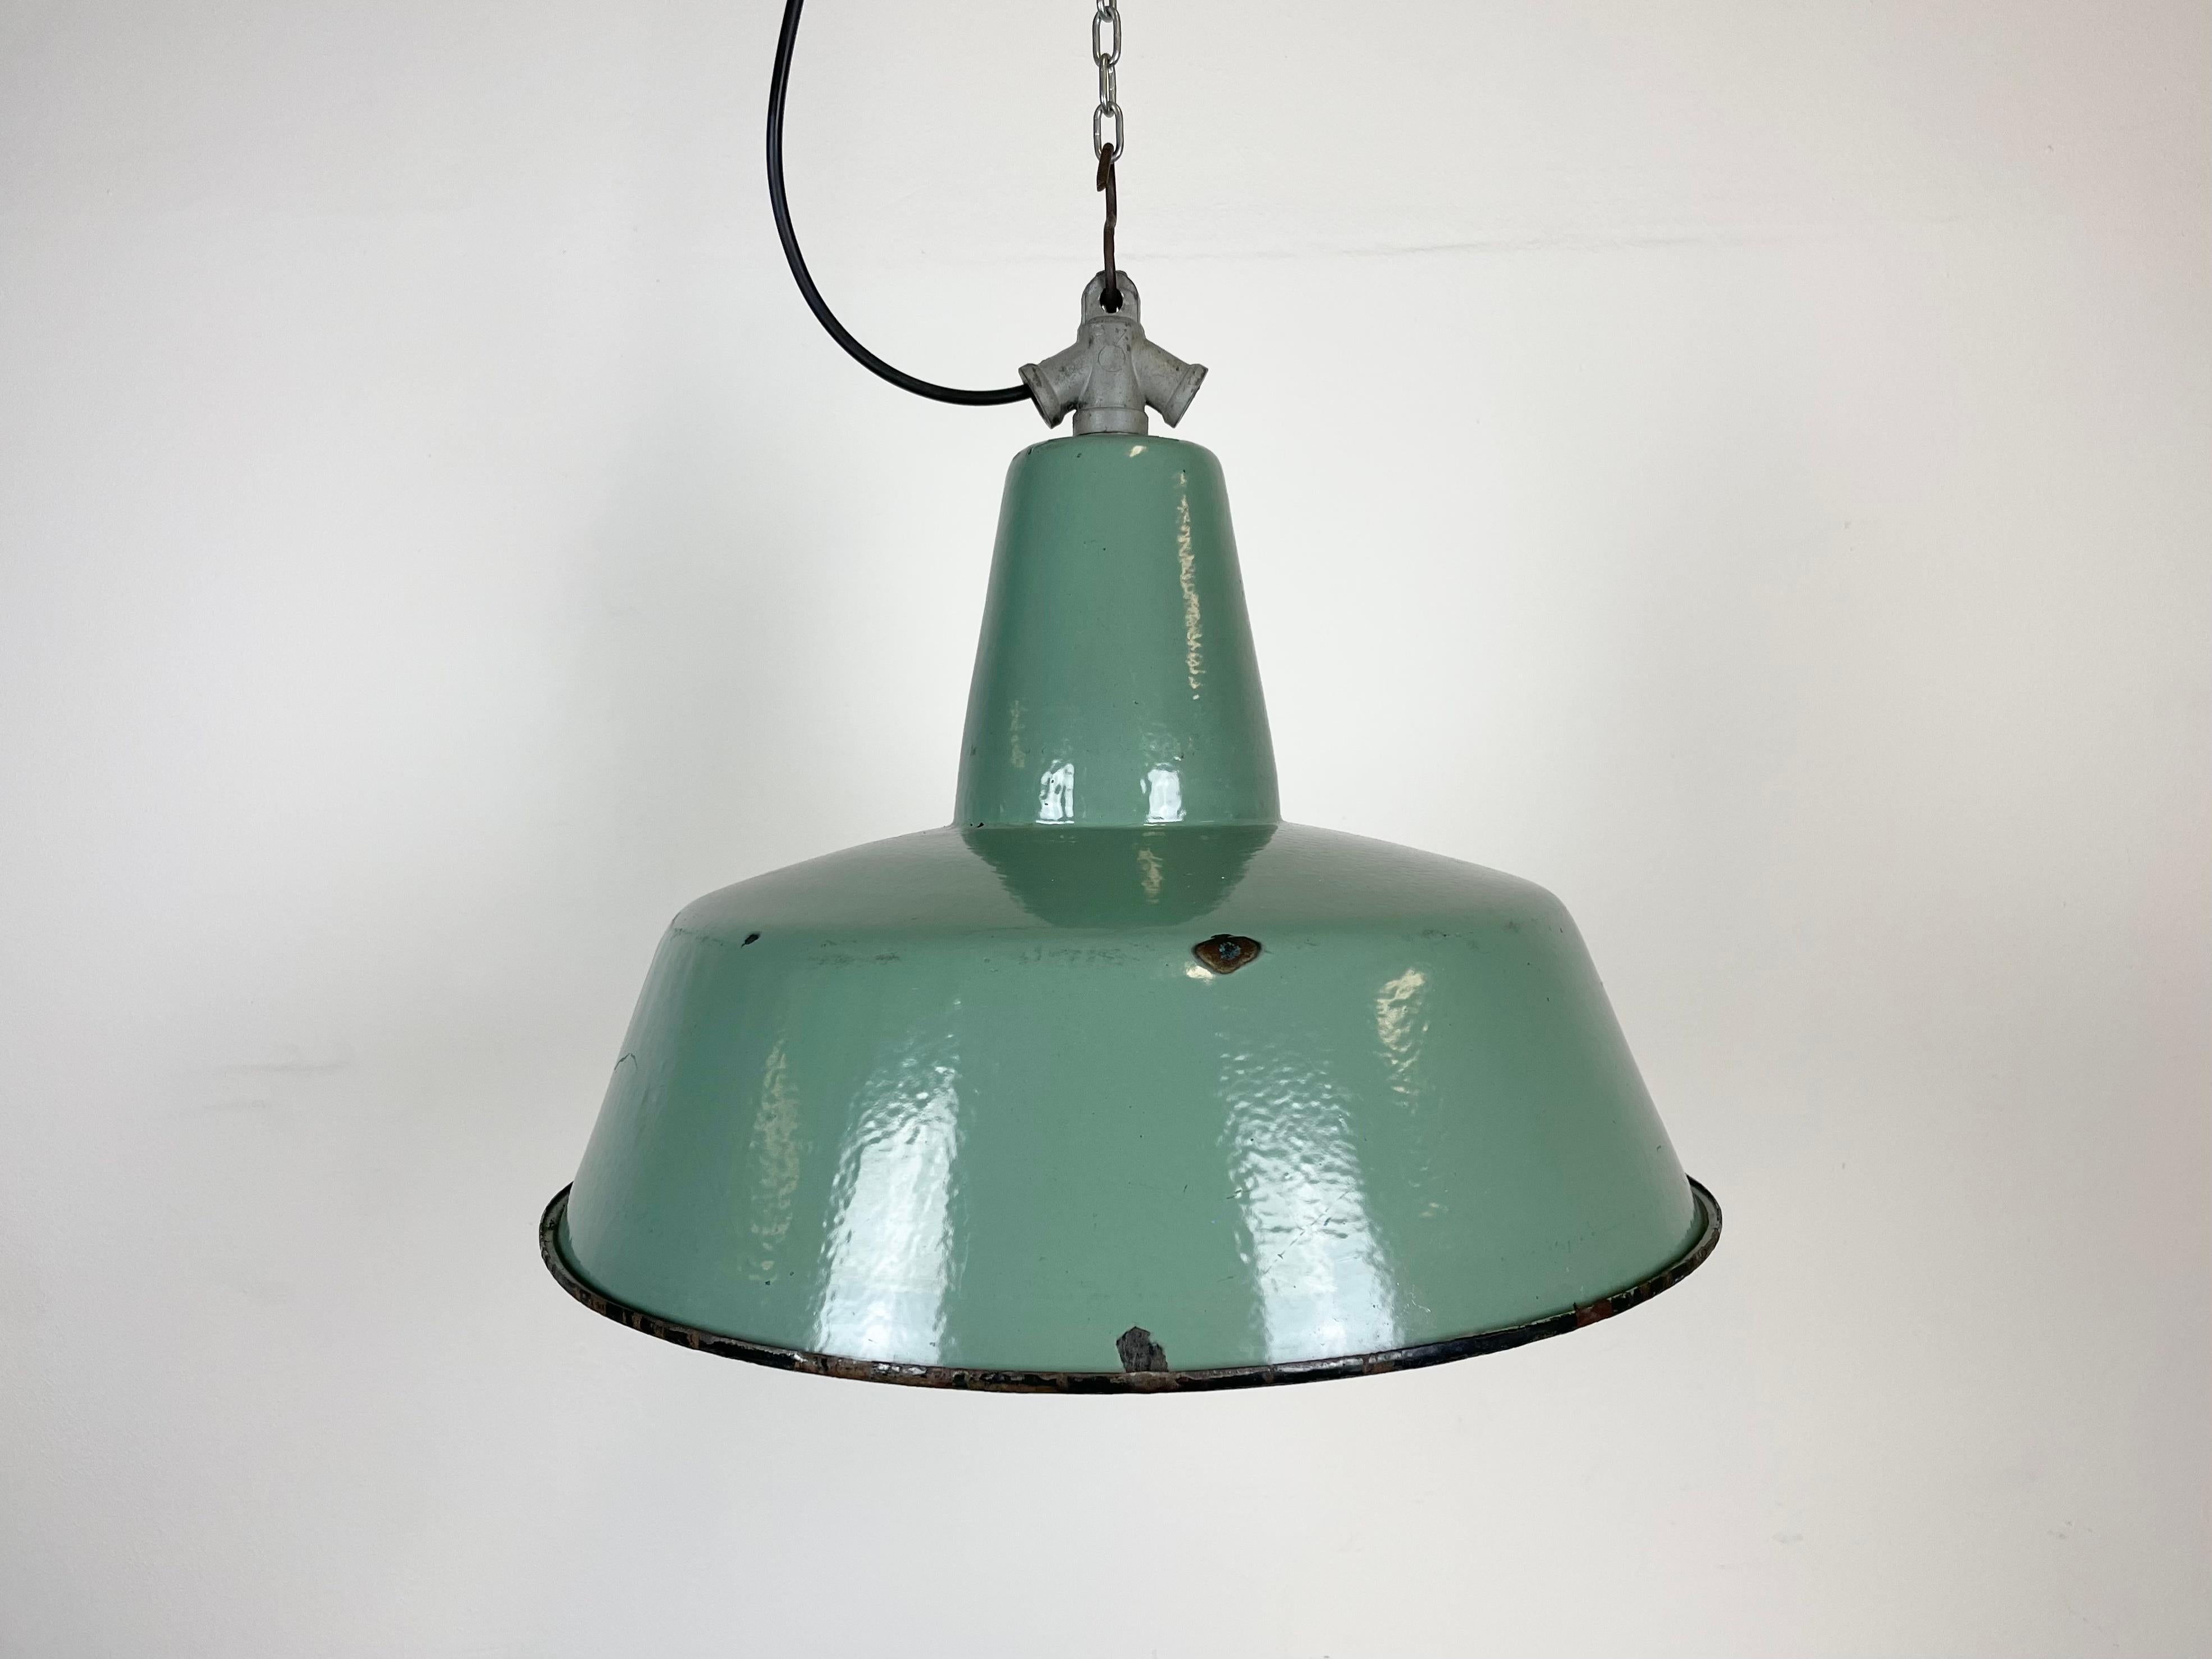 Industrielle Petrol-Emaille-Fabriklampe mit gusseiserner Platte, 1960er Jahre (20. Jahrhundert)